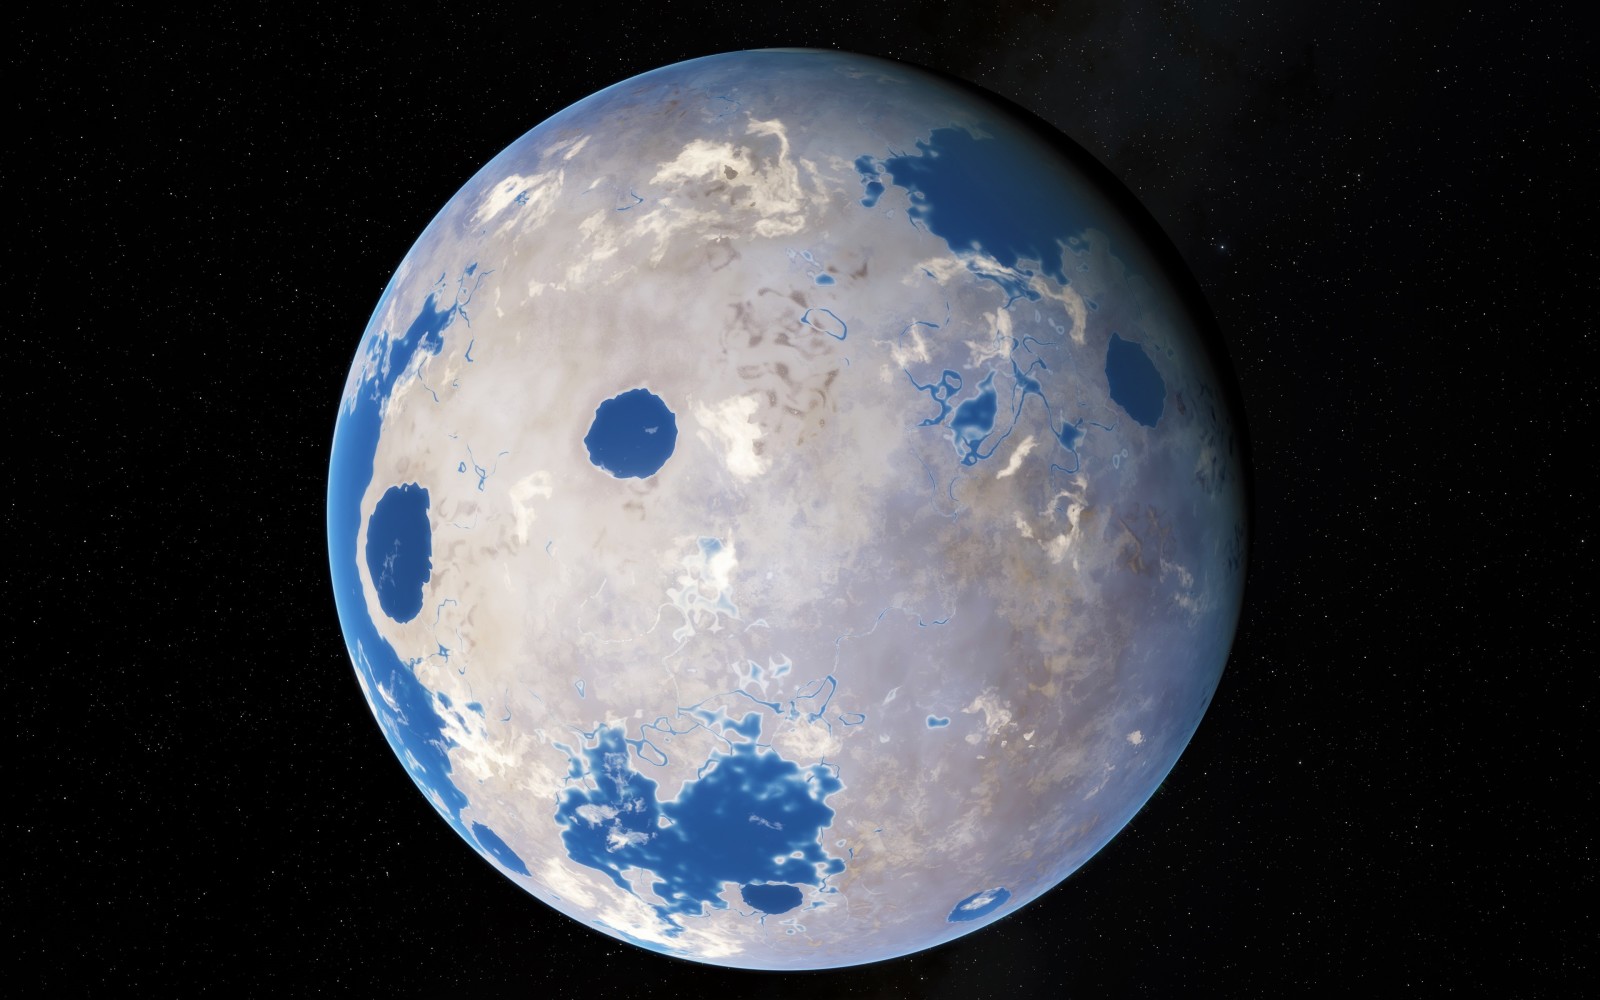 ในวงโคจร, ดาวเคราะห์นอกระบบ, ดาวแคระเหลือง, Kepler-452 b